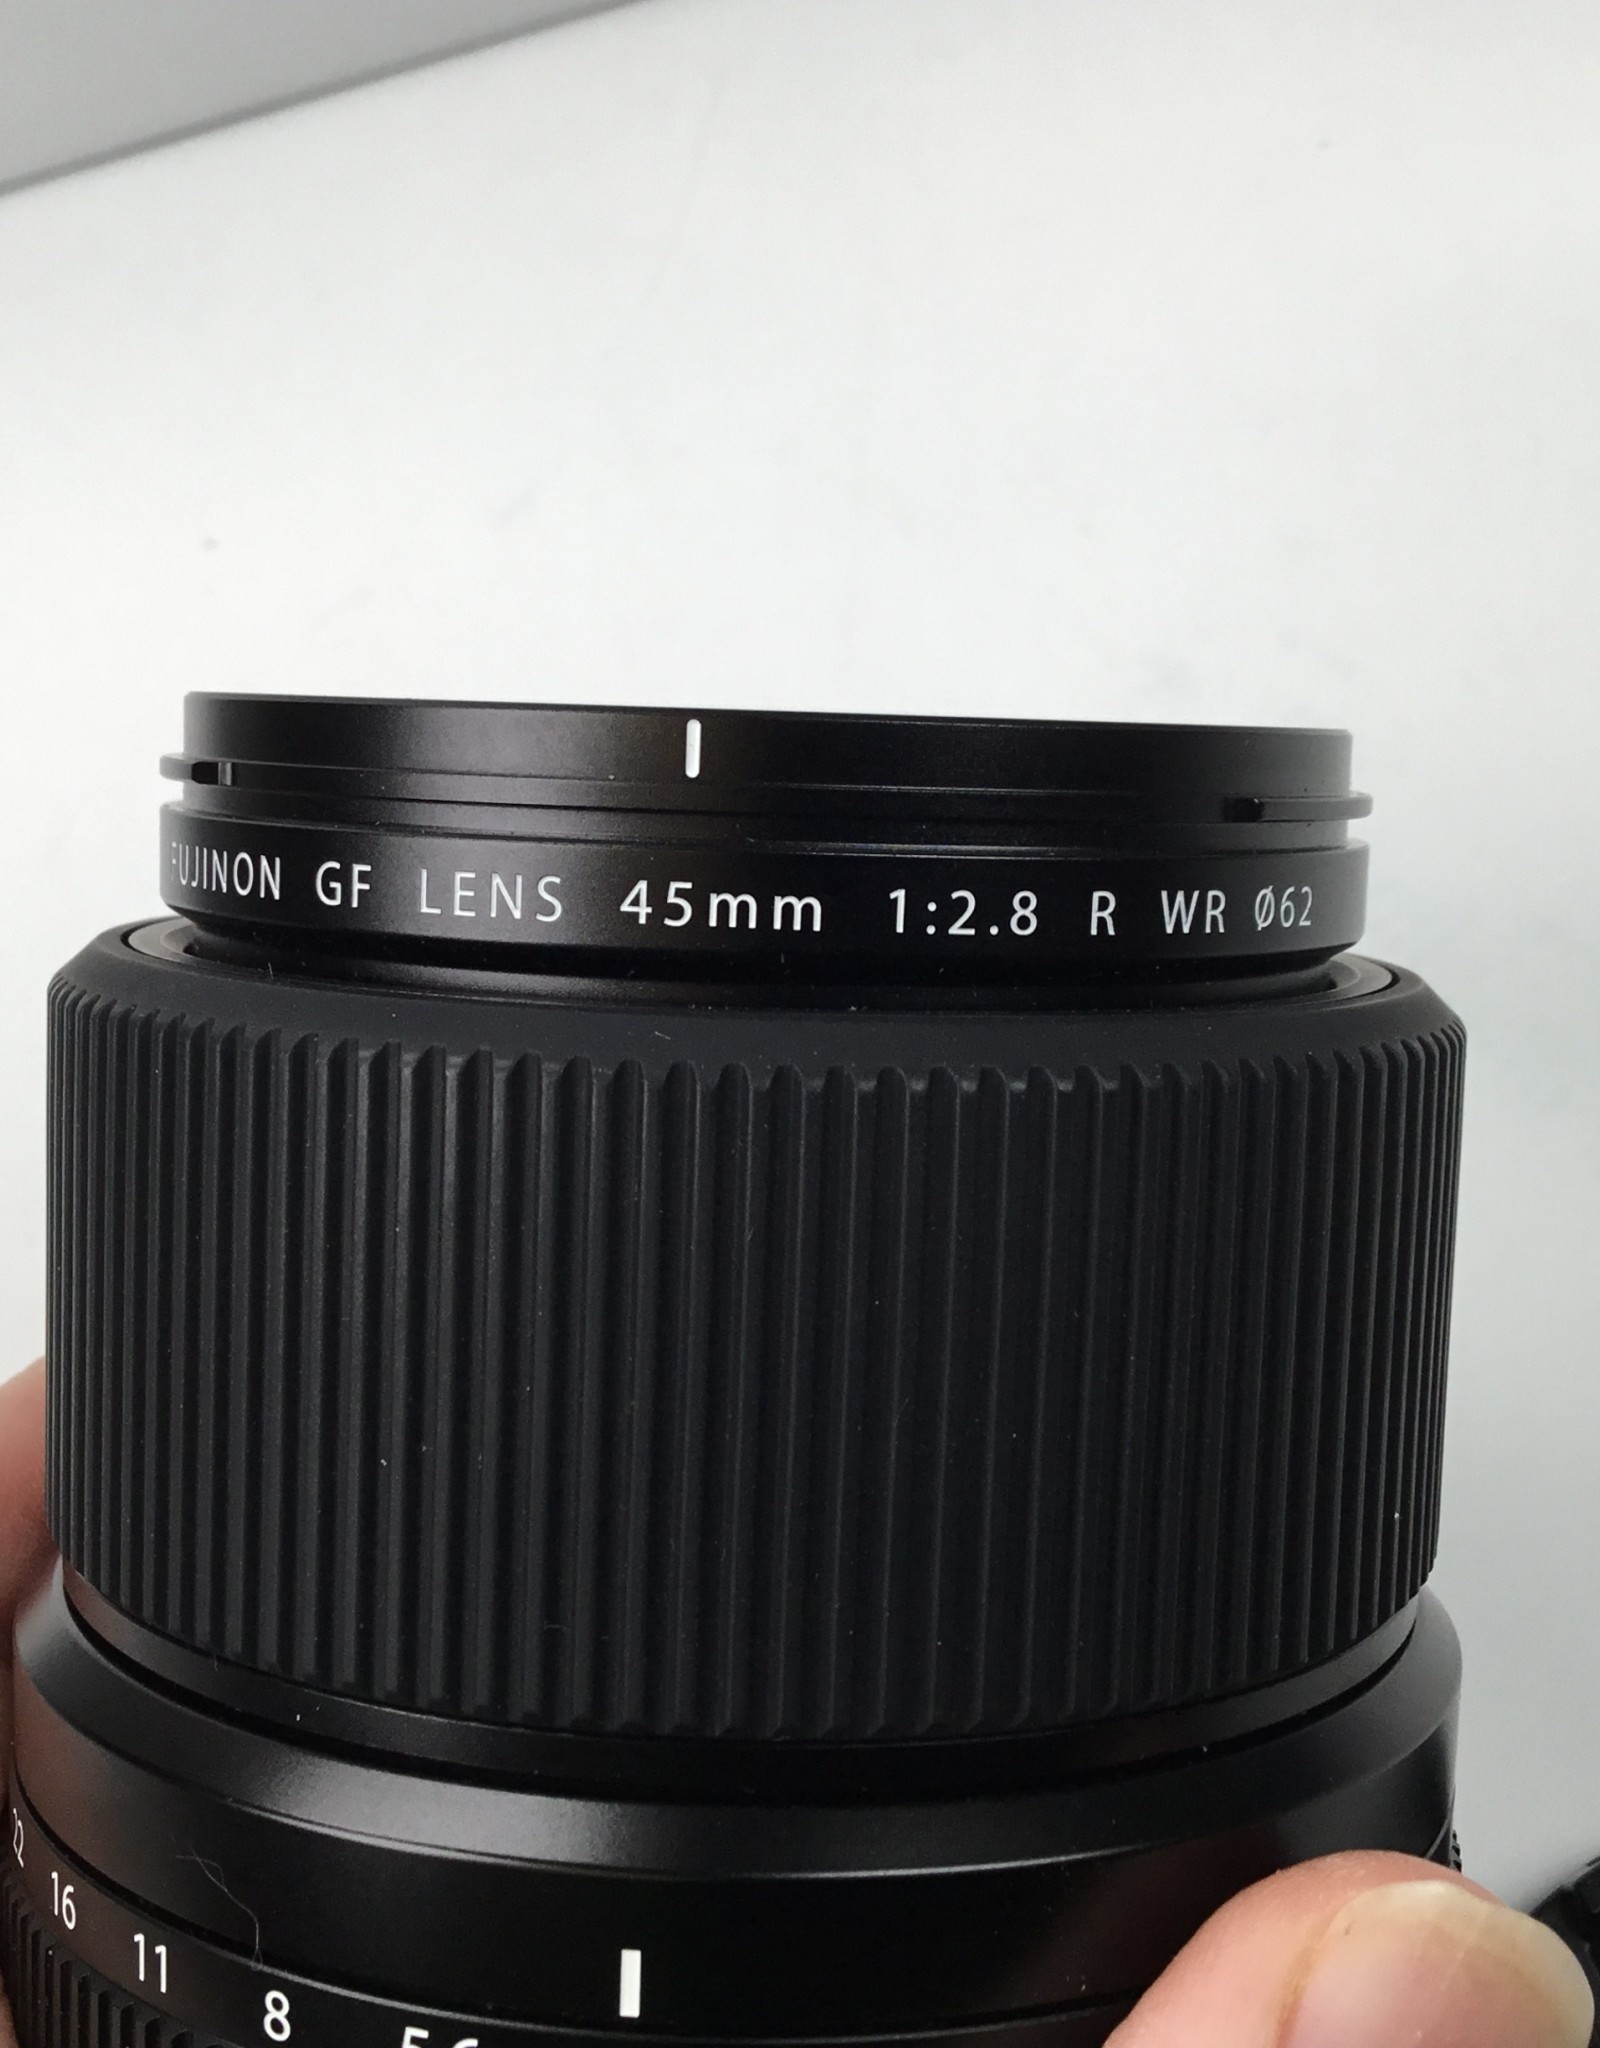 FUJI Fuji GF 45mm f2.8 R WR Lens in Box Used EX